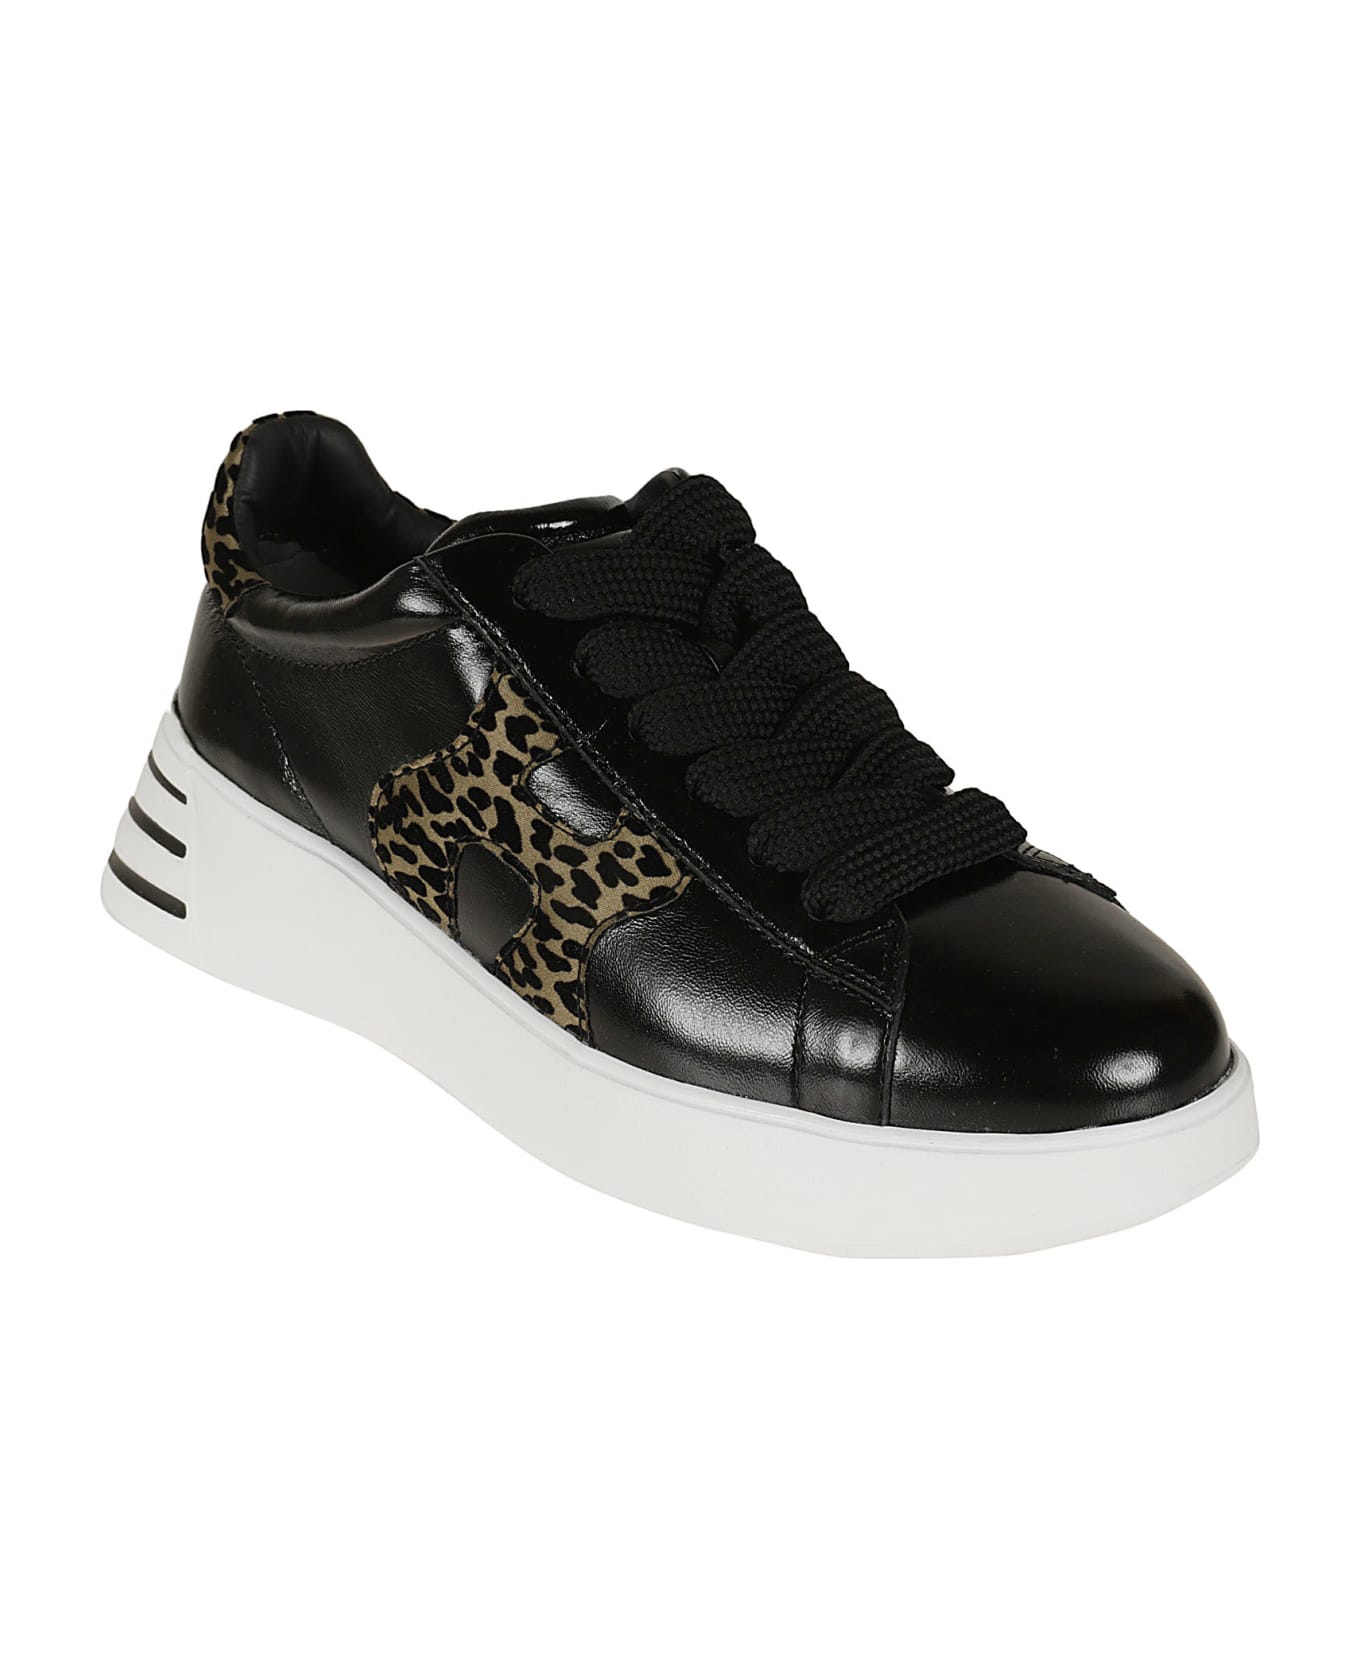 Hogan H564 Rebel Sneakers - Black